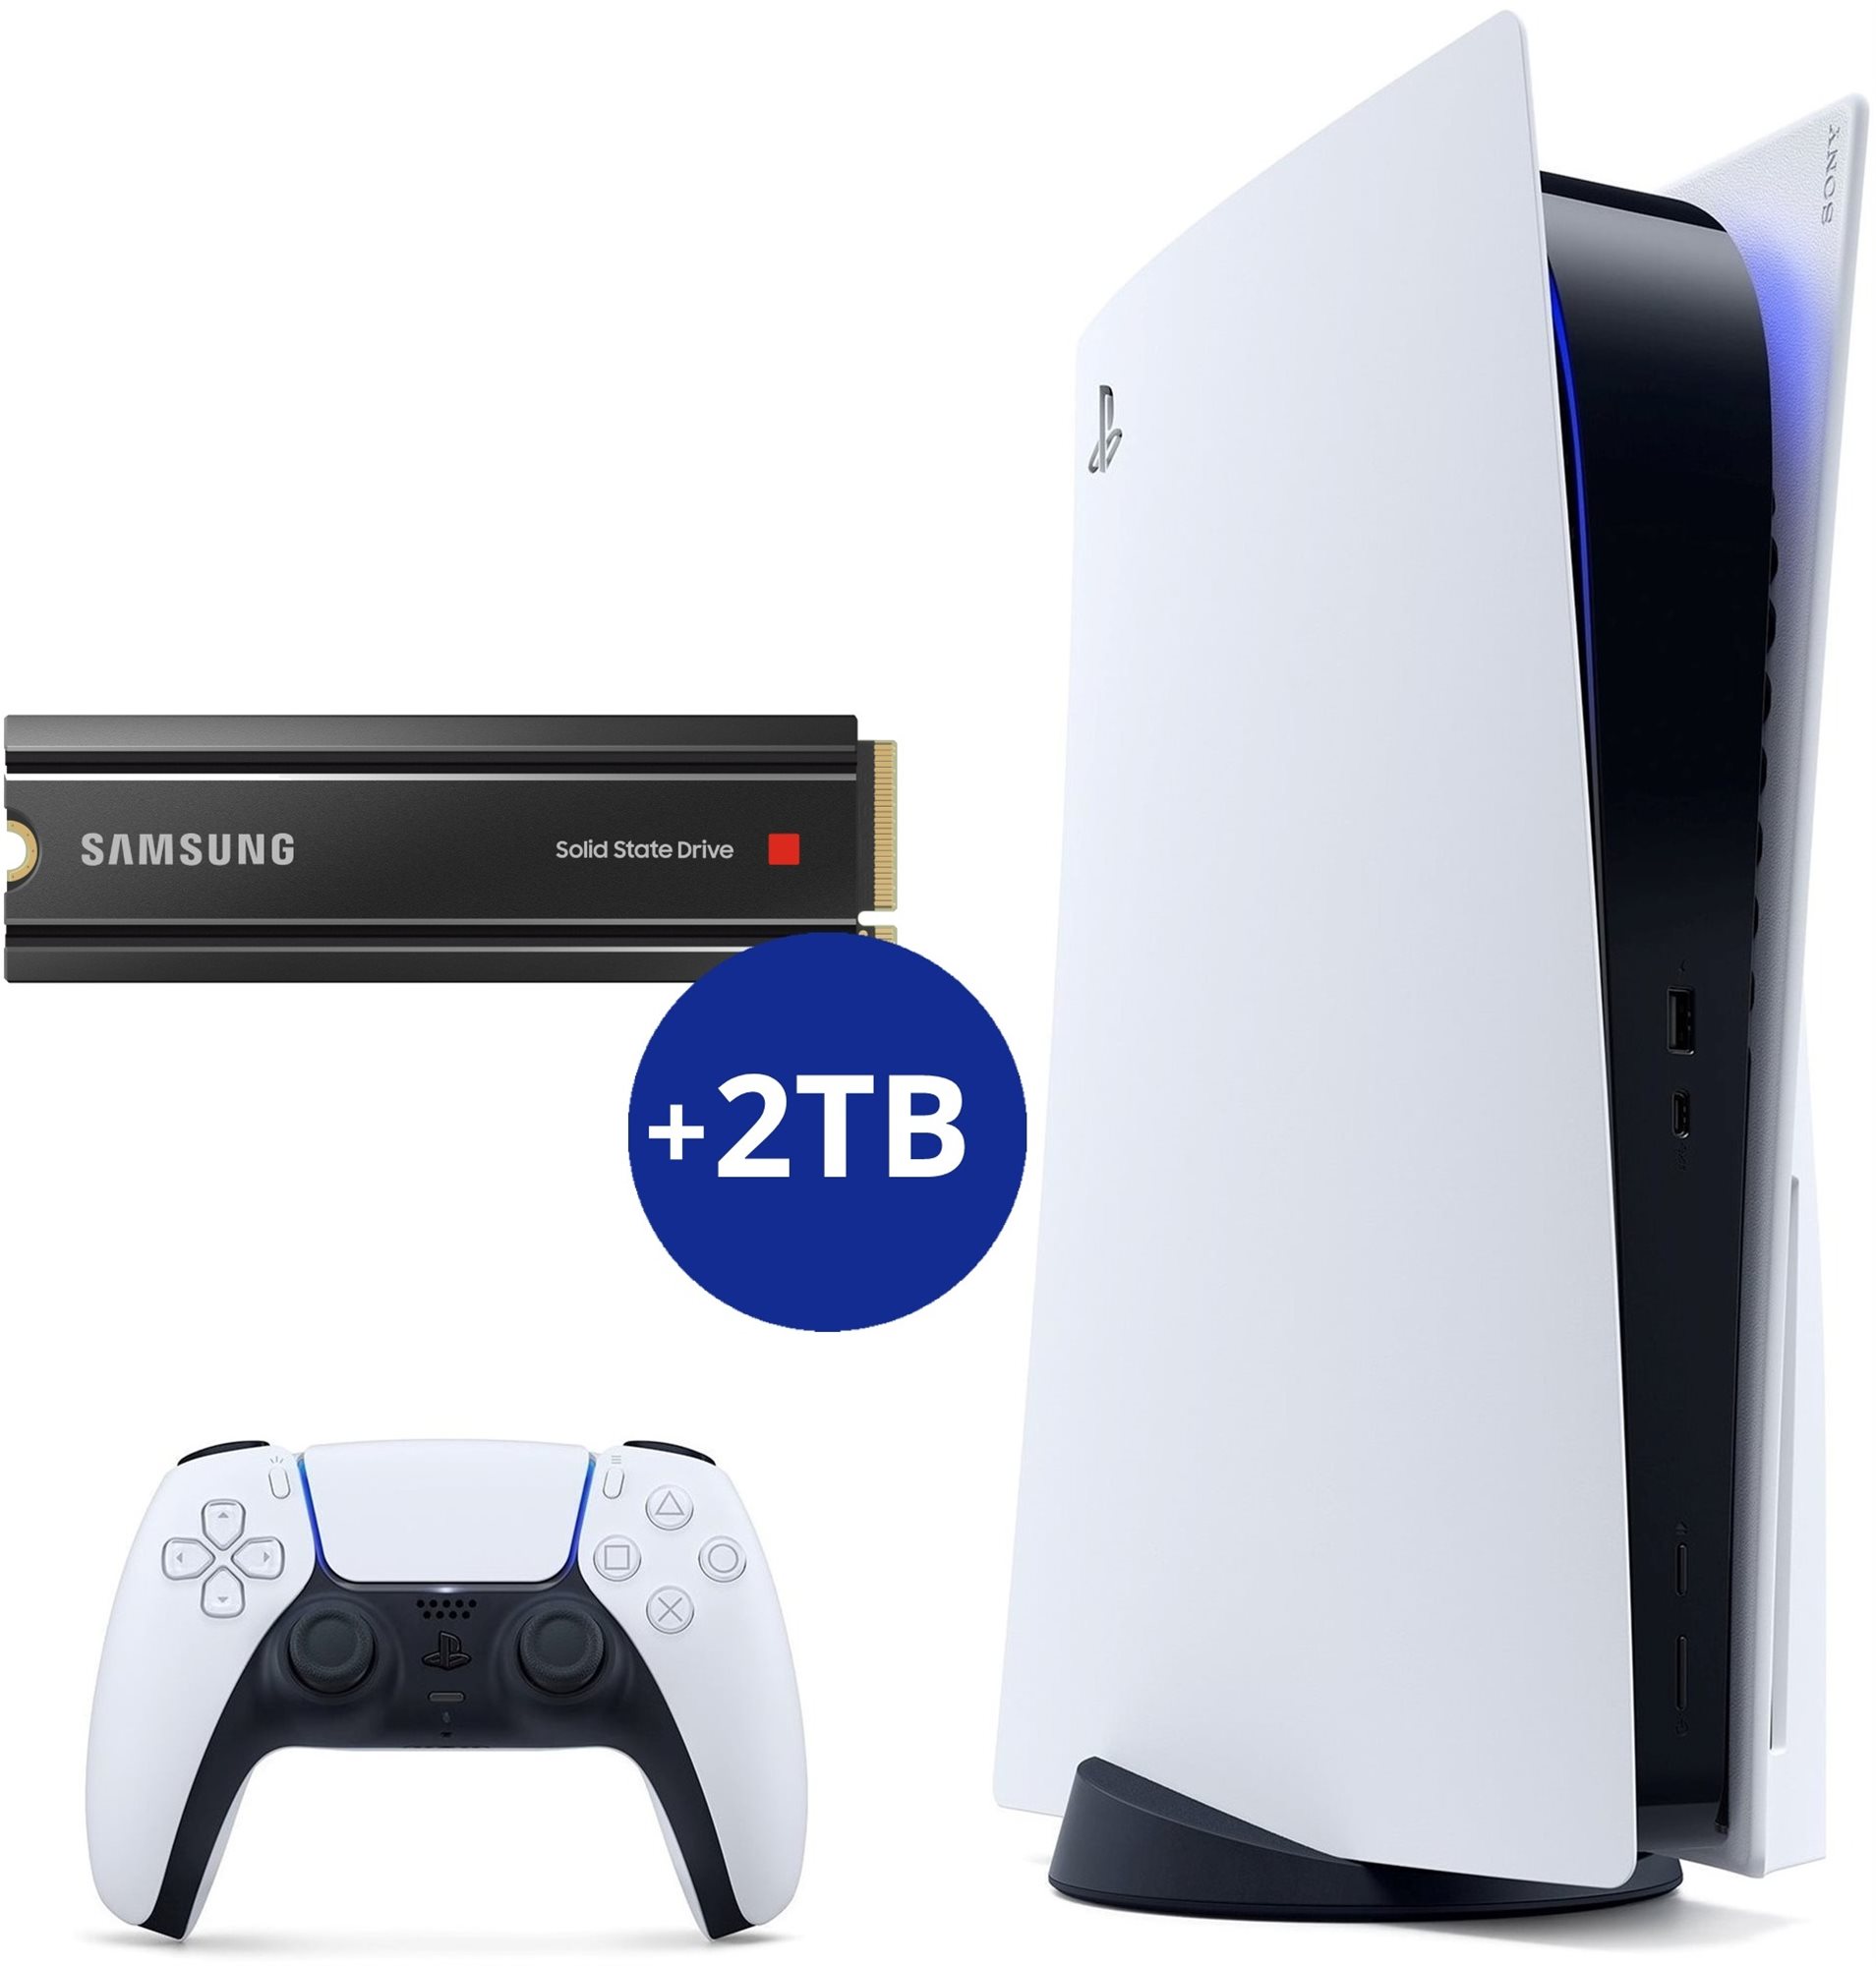 Konzol PlayStation 5 bővített tárhellyel (+2TB SSD)